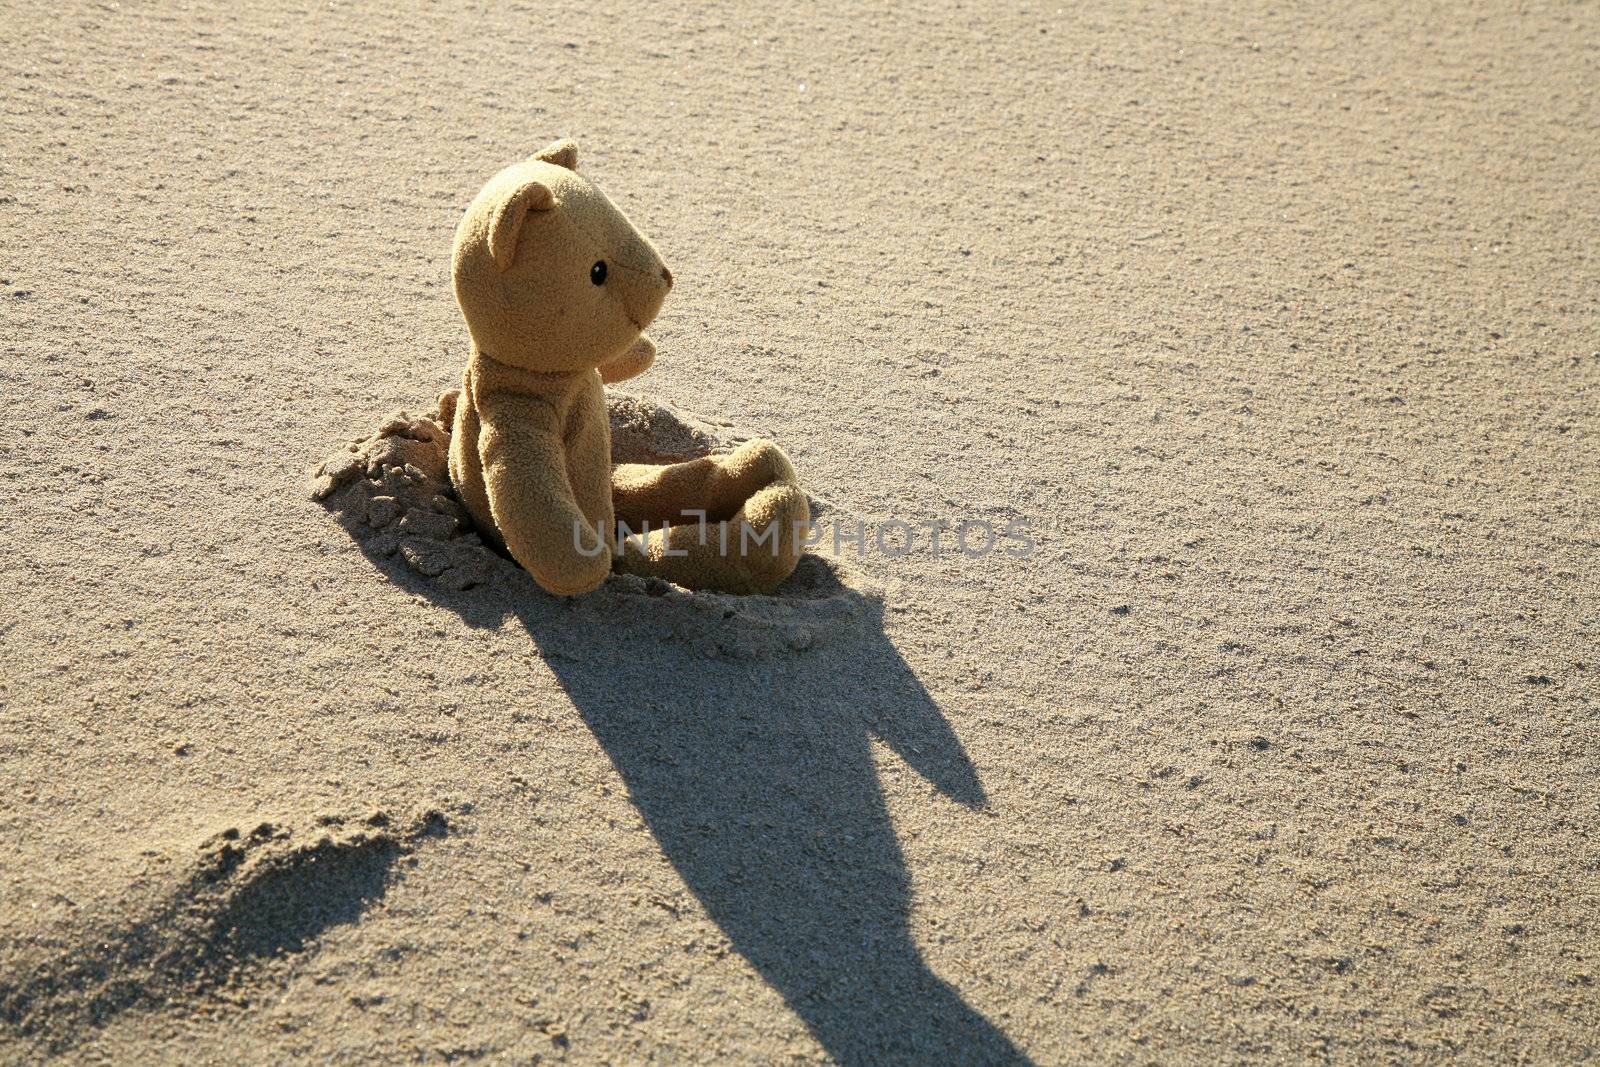 Teddy bear on the beach by fotokate